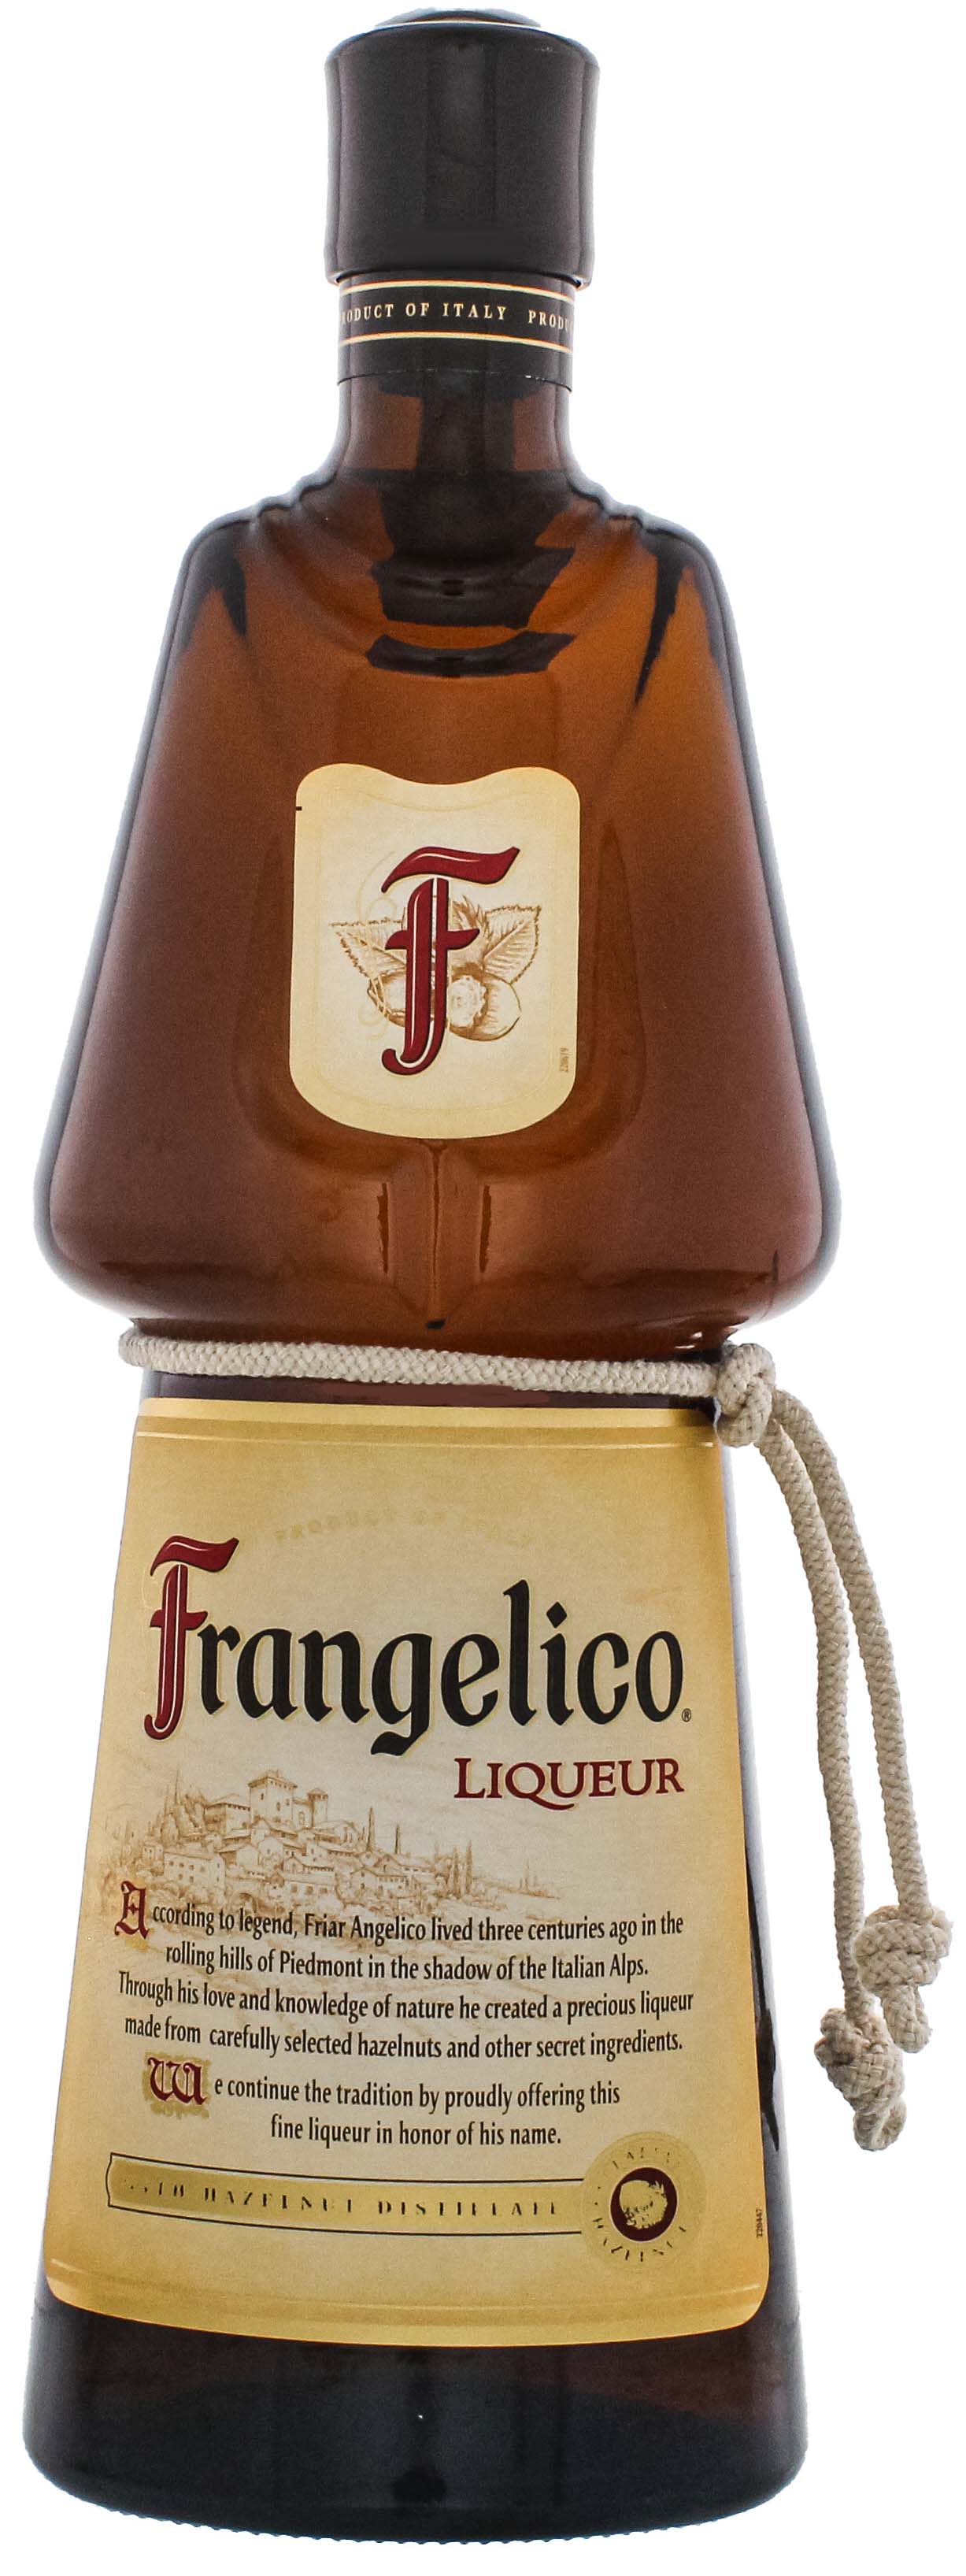 Frangelico Haselnuss Liqueur jetzt kaufen im Drinkology Online Shop!